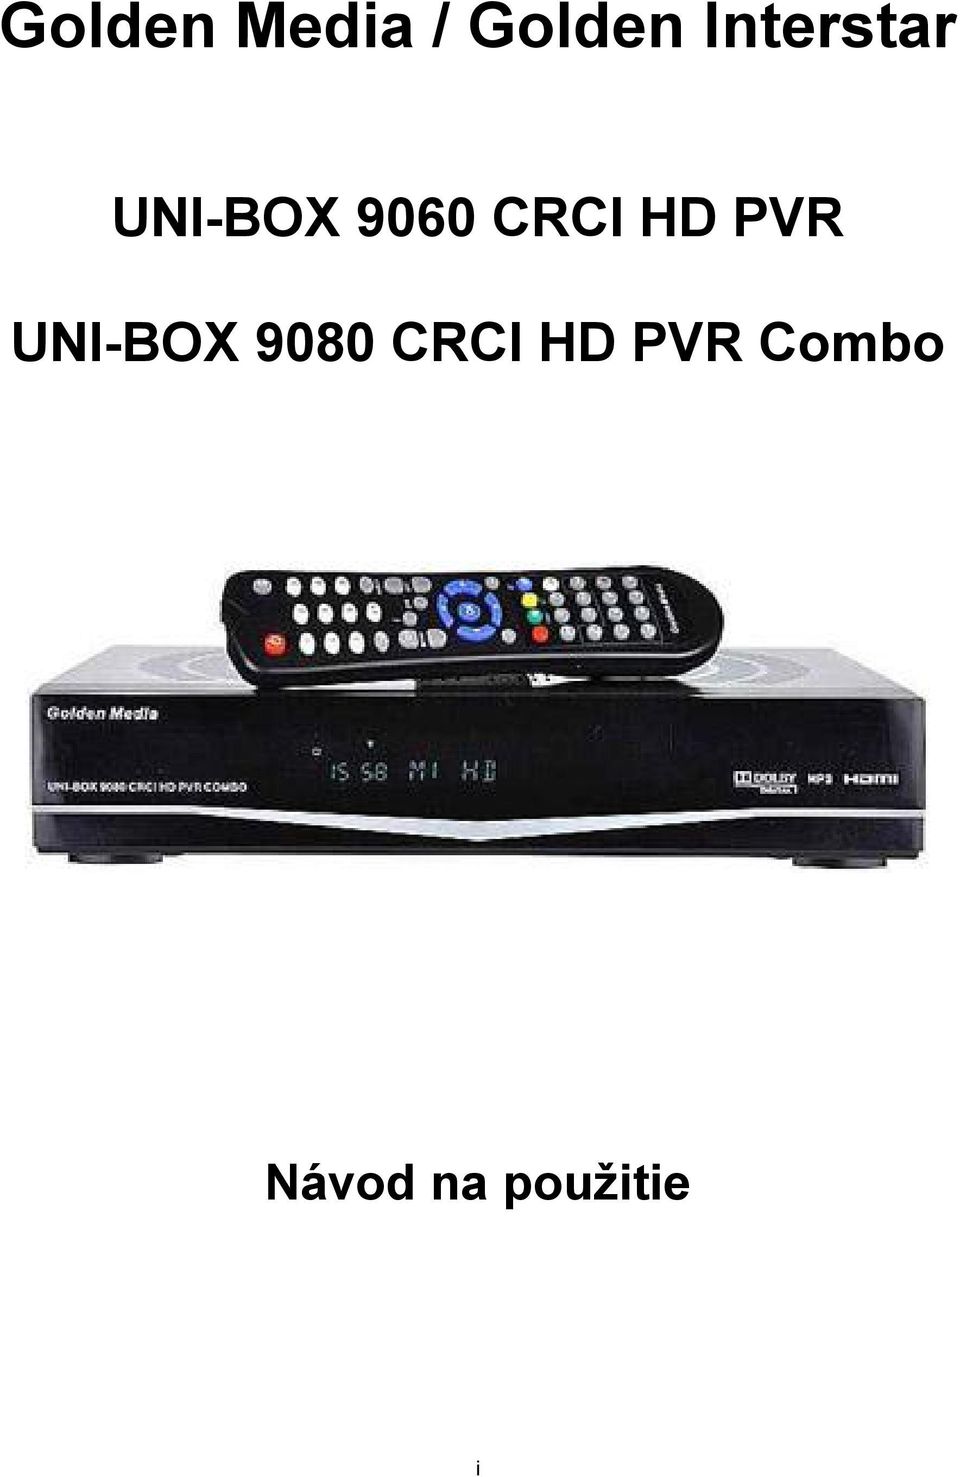 CRCI HD PVR UNI-BOX 9080